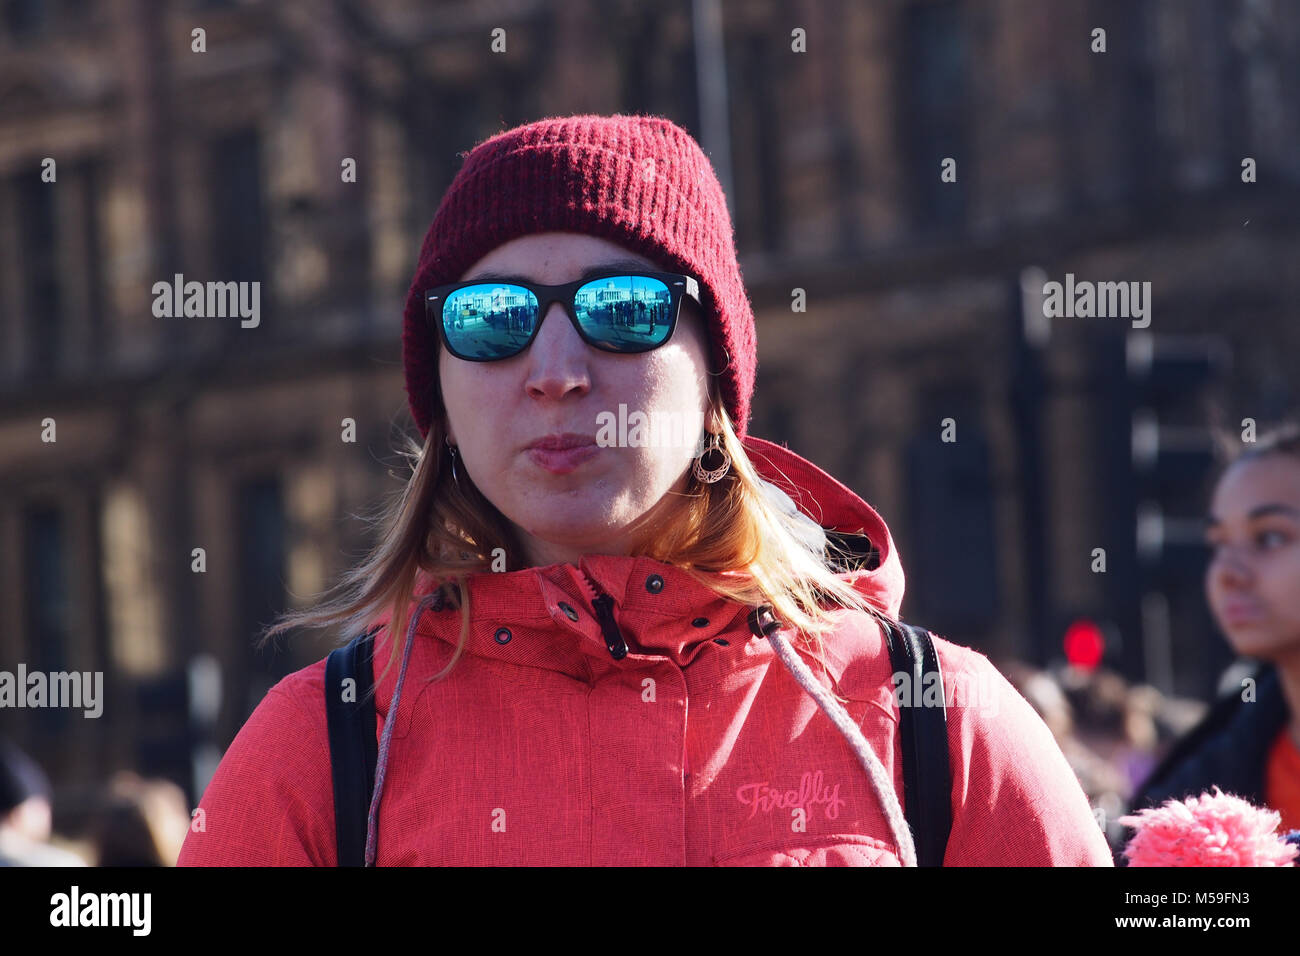 Eine Frau trägt einen roten Mantel mit Kapuze, eine Wollmütze und nachdenklich, Spiegel Sonnenbrille und Rucksack Stockfoto